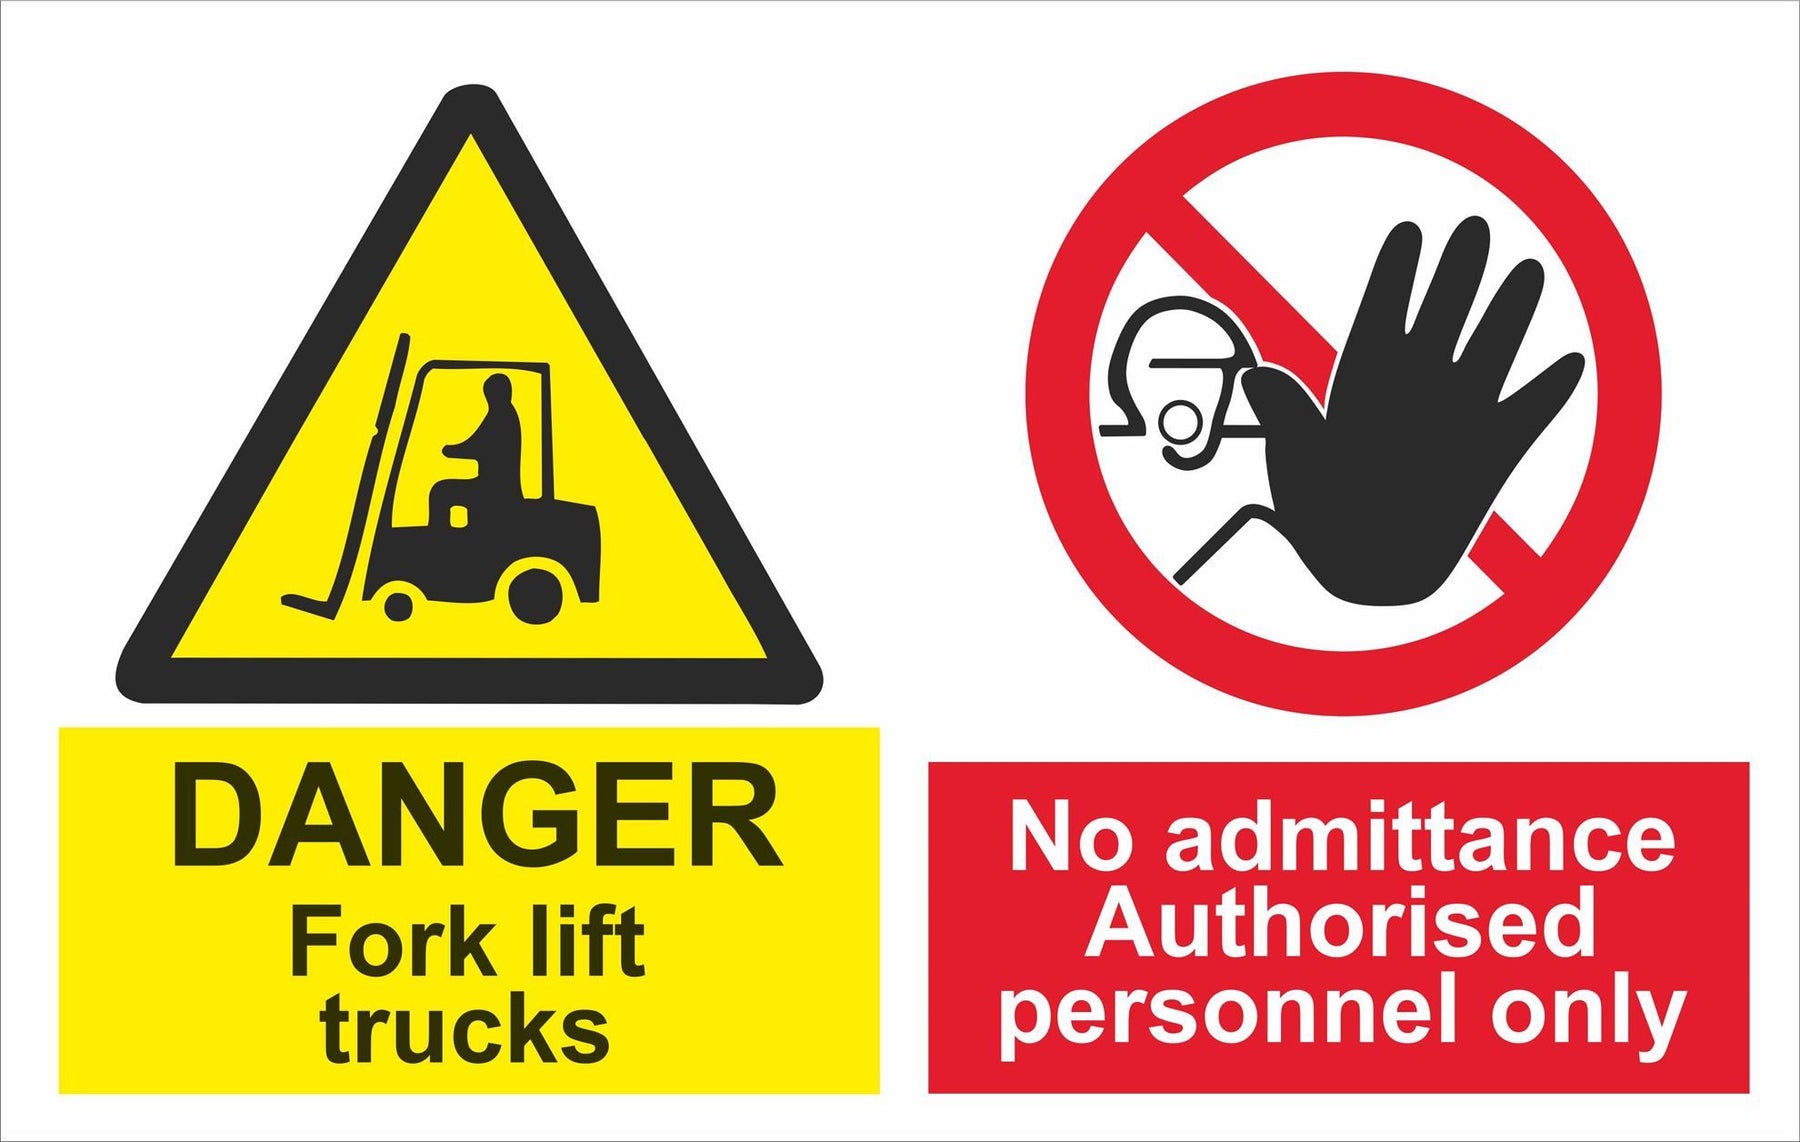 DANGER Fork lift trucks